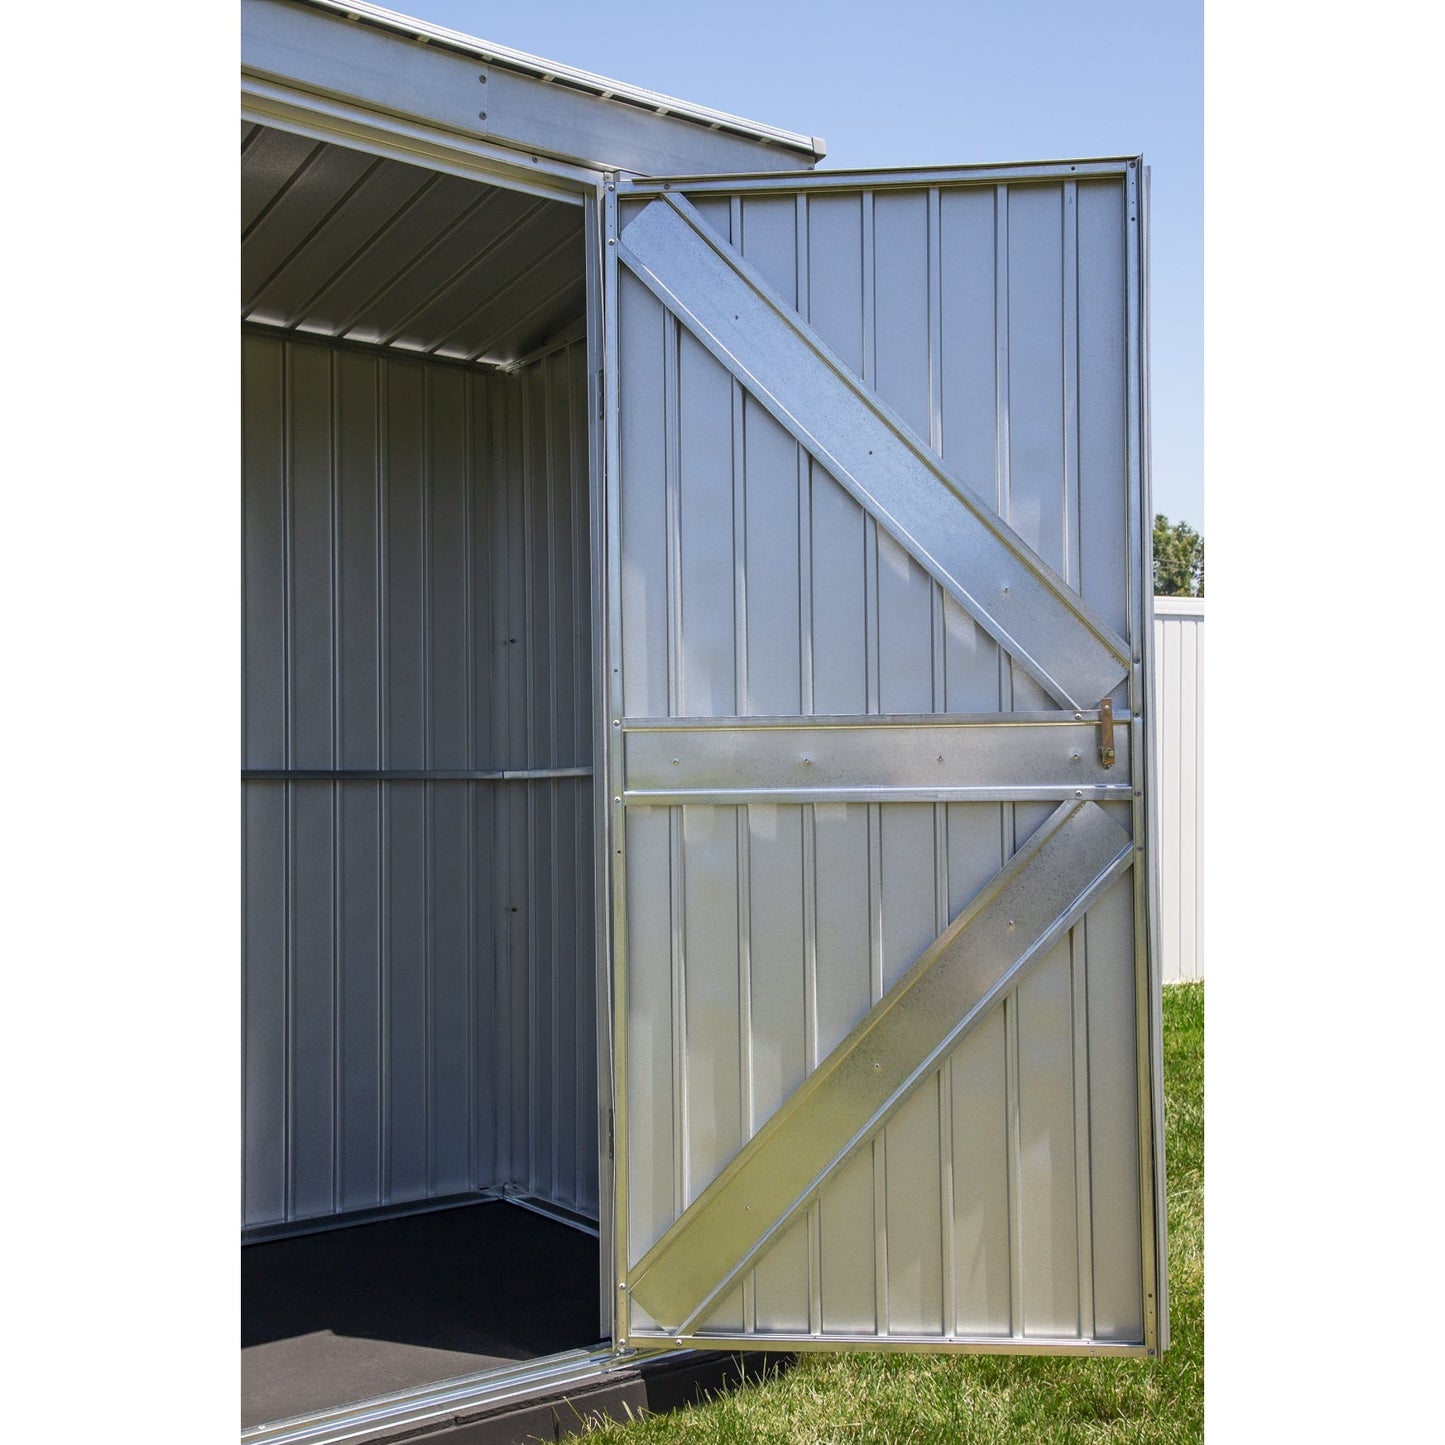 Arrow Elite Steel Storage Shed 12 x 12 ft.-Delightful Yard